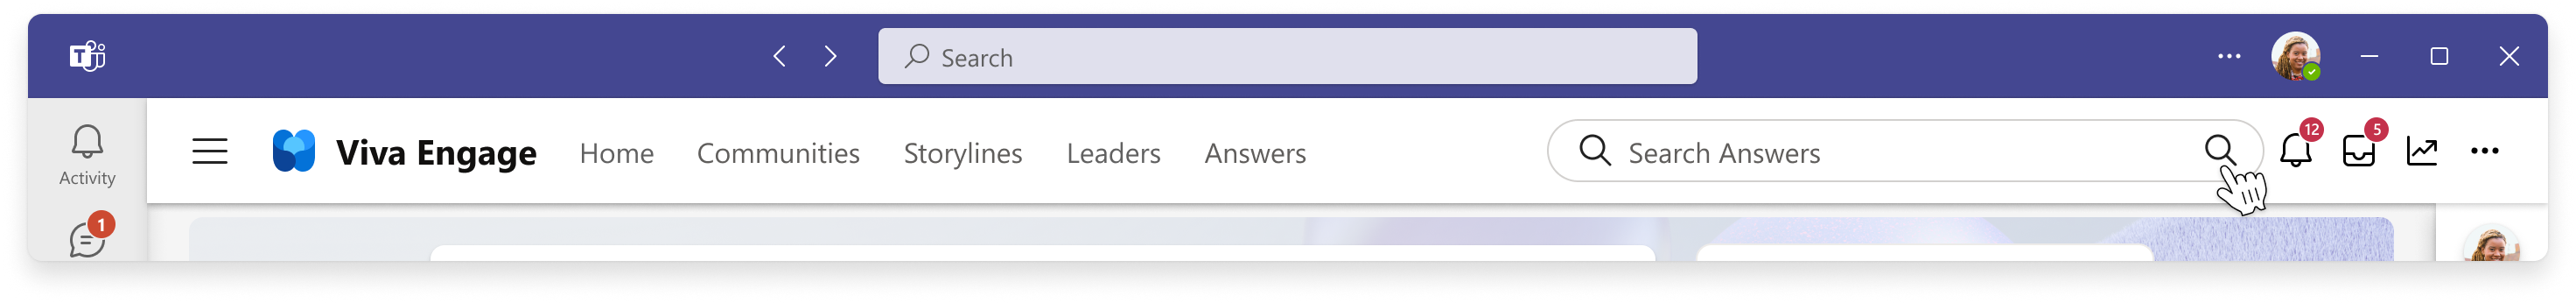 Изображение интерфейса поиска для поиска на уровне ответов в Viva Engage